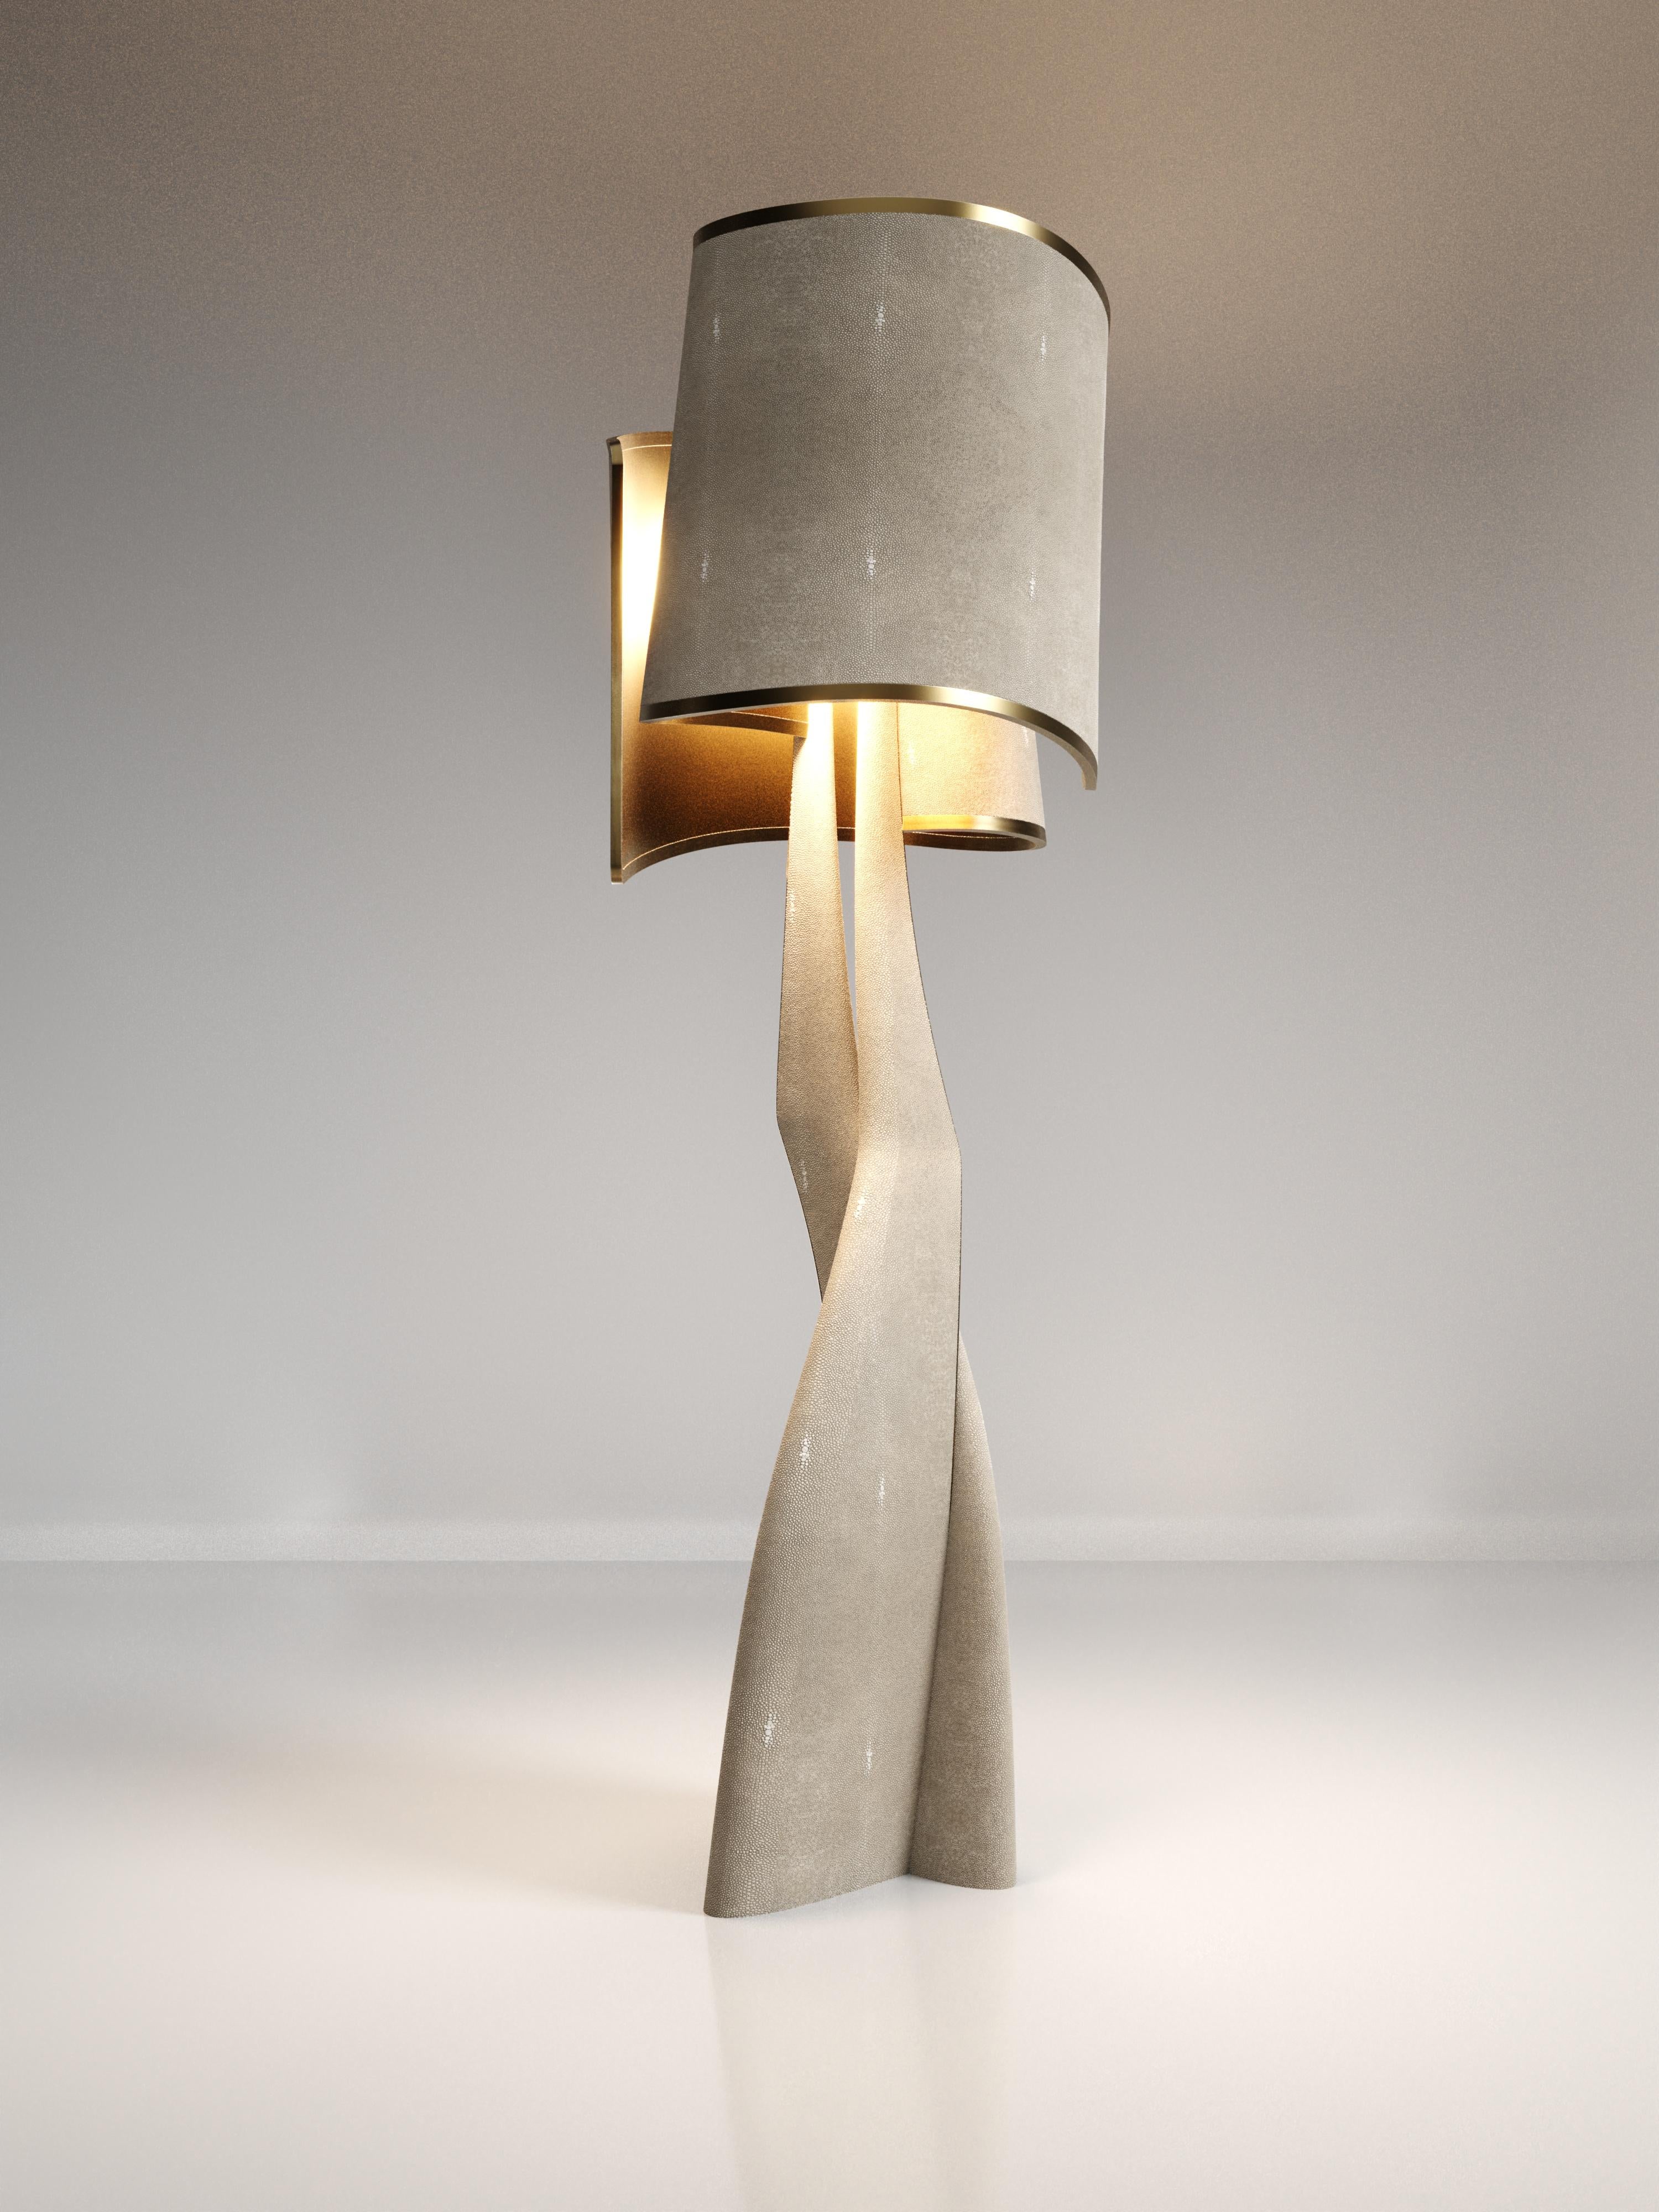 Le lampadaire Chital III de Kifu Paris est une pièce élégante et sculpturale, incrustée d'un mélange de laiton bronze-patine et de galuchat crème. Les pieds ciselés, forme emblématique de l'univers KIFU PARIS, se transforment en teintes unies qui